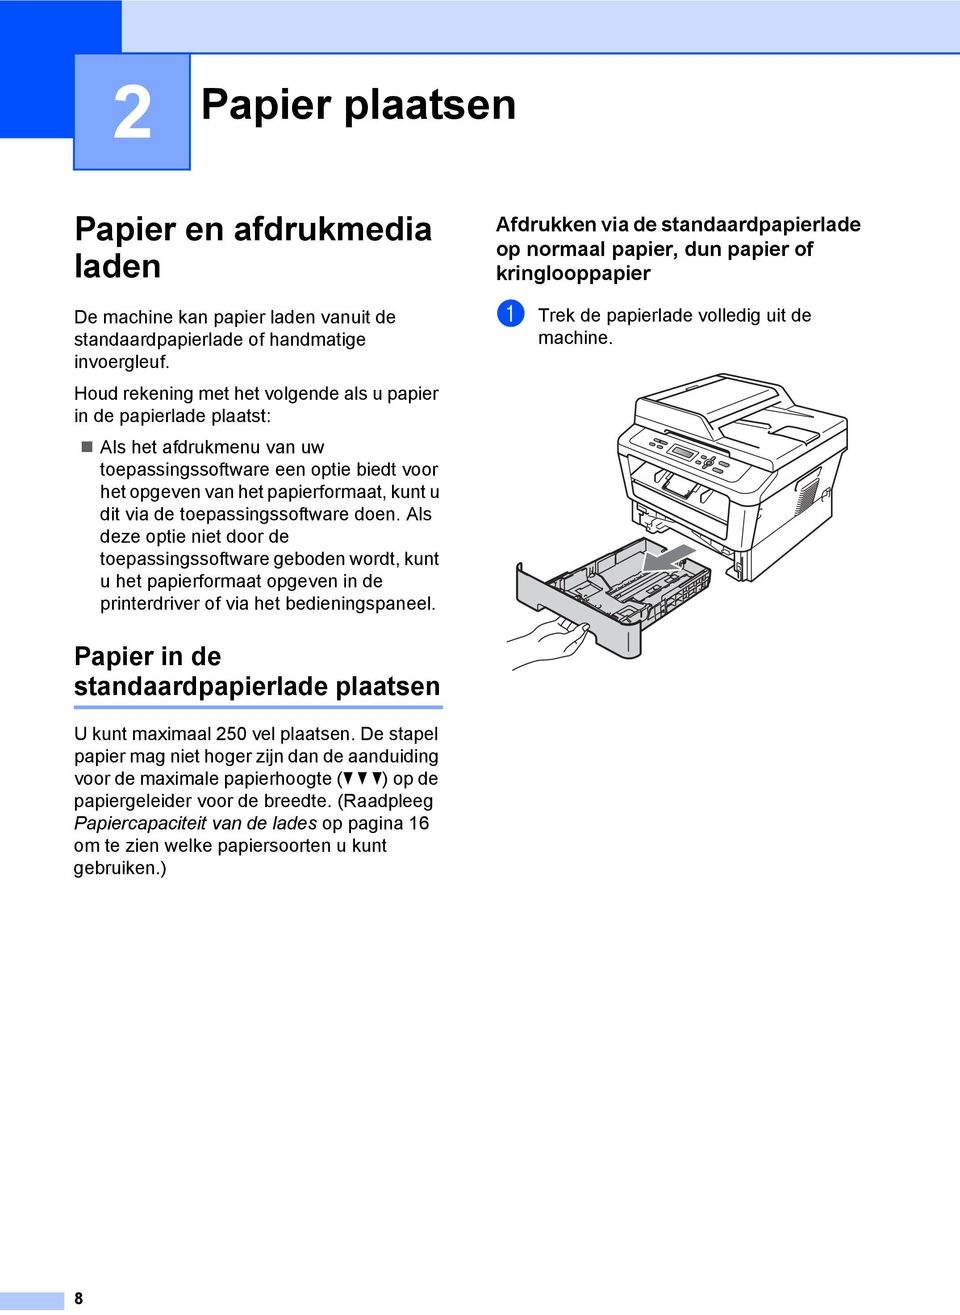 Houd rekening met het volgende als u papier in de papierlade plaatst: Als het afdrukmenu van uw toepassingssoftware een optie biedt voor het opgeven van het papierformaat, kunt u dit via de